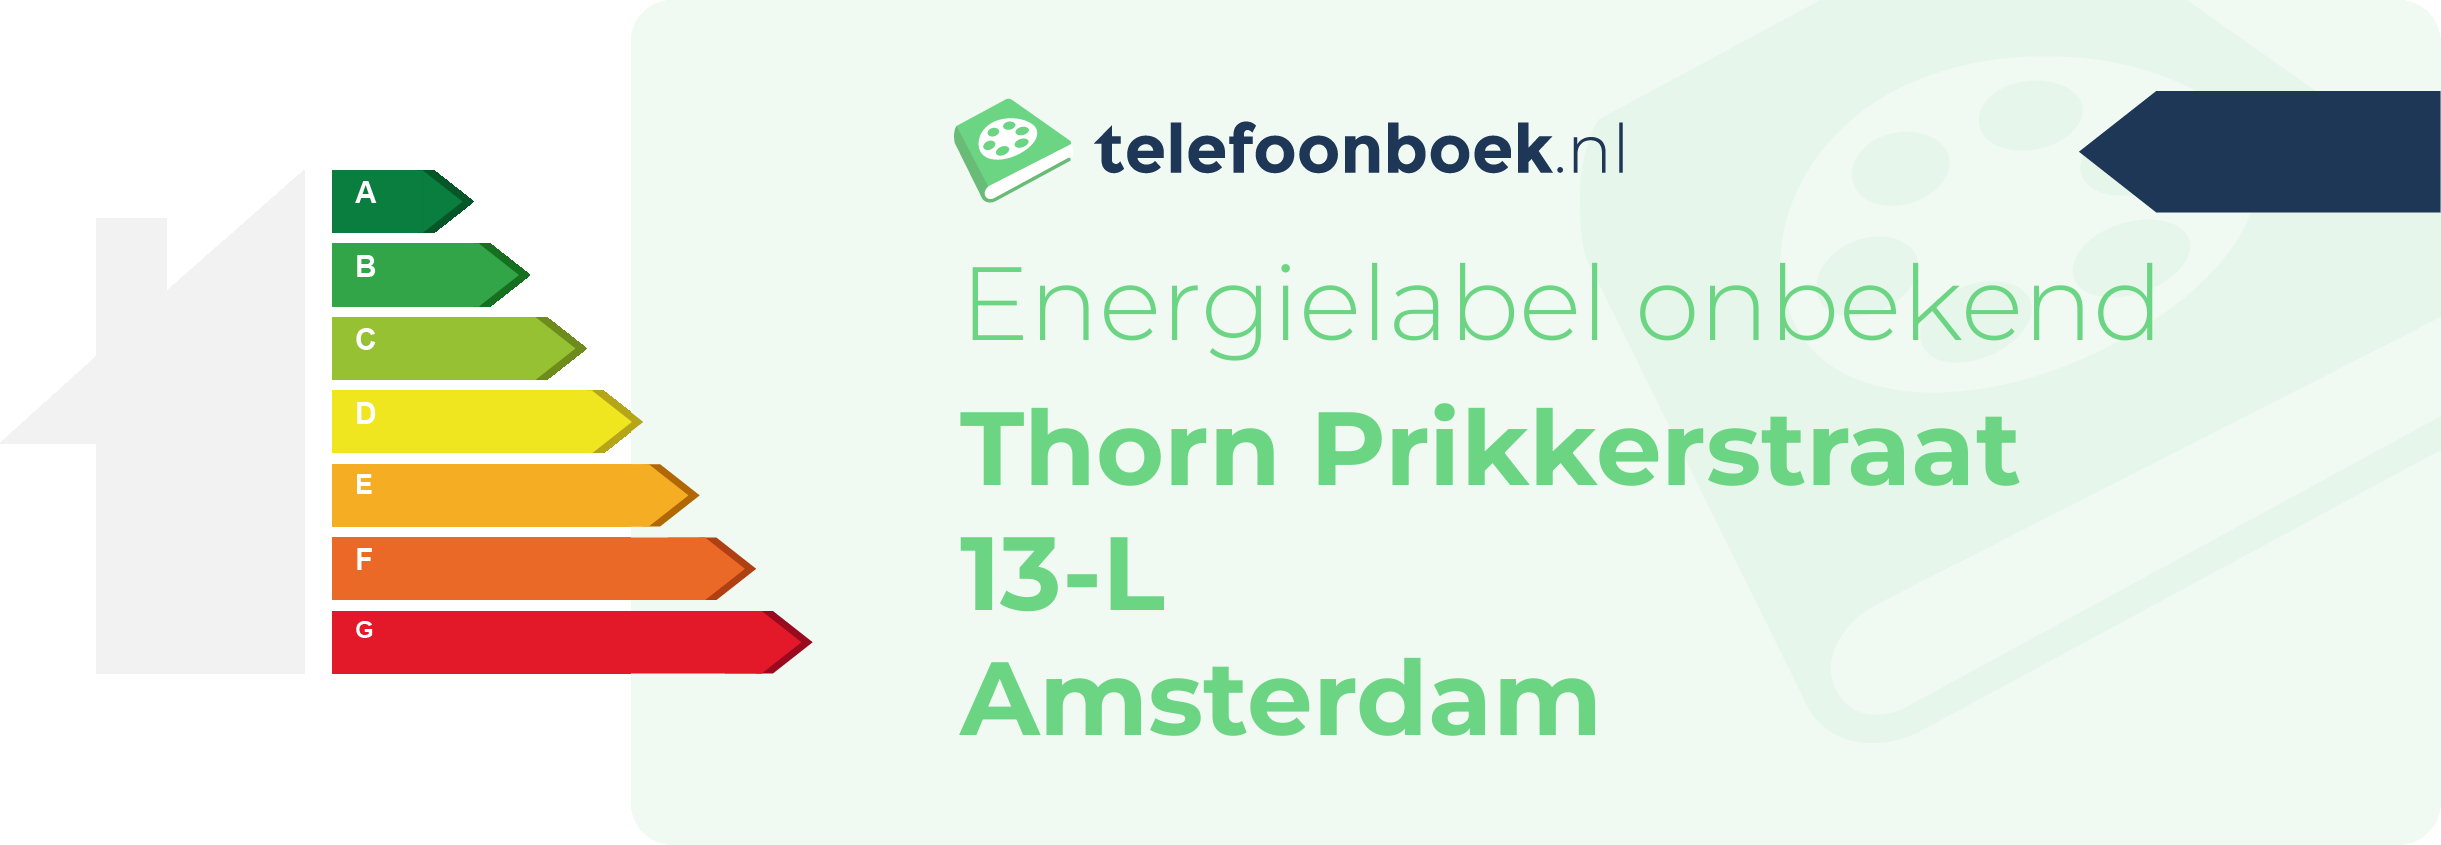 Energielabel Thorn Prikkerstraat 13-L Amsterdam